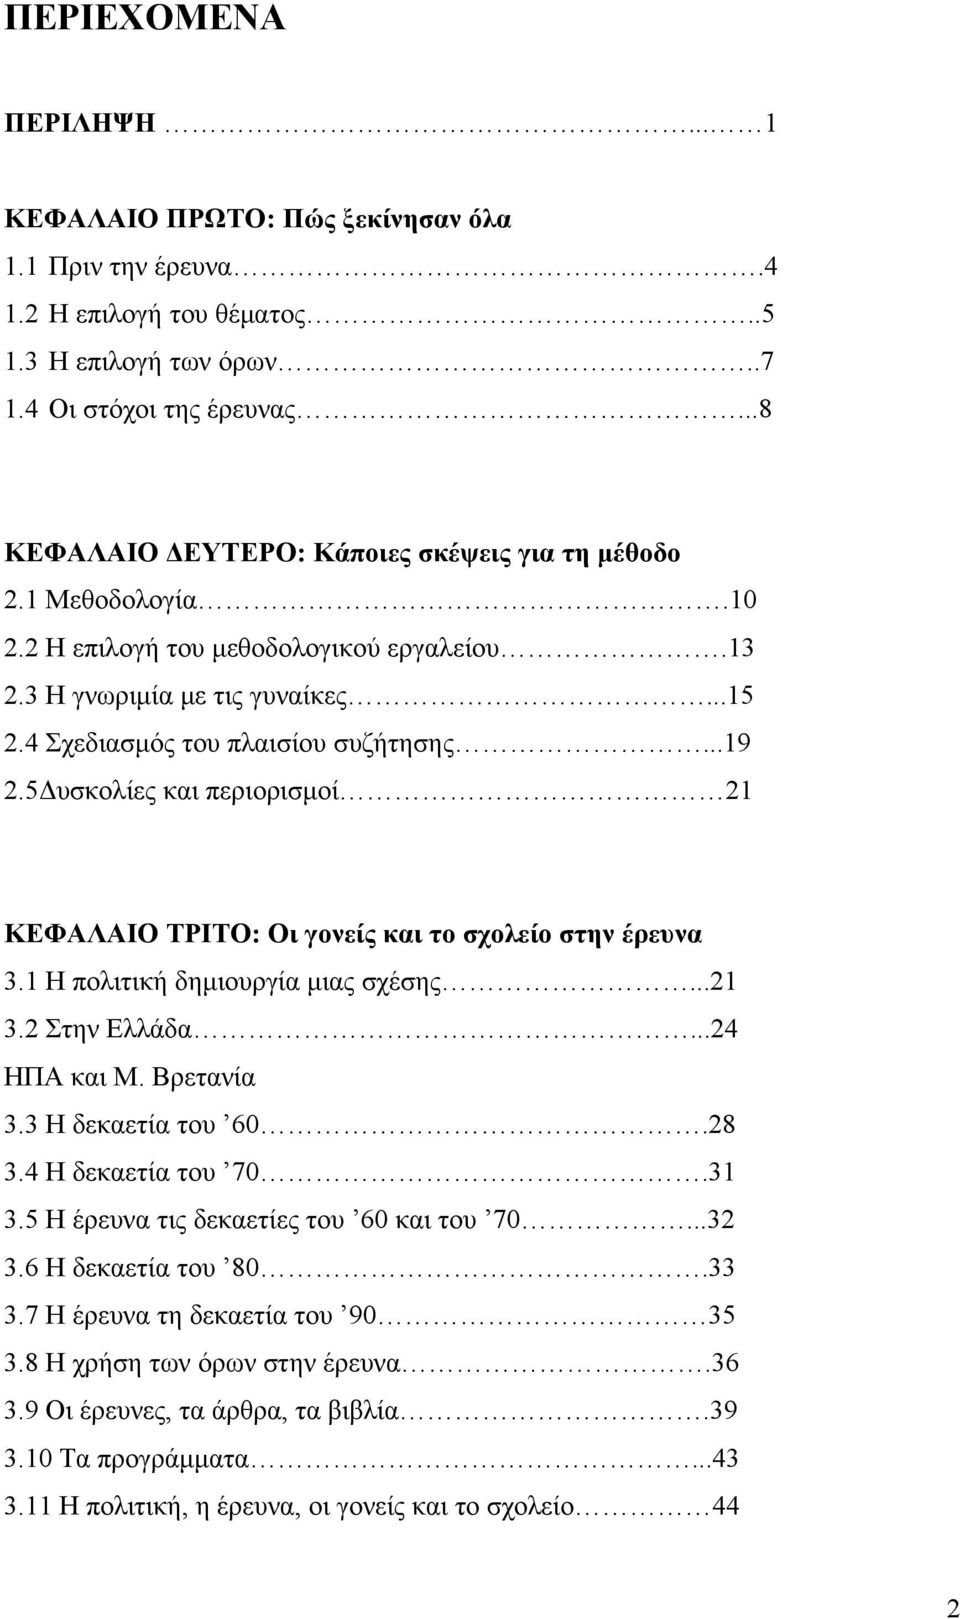 5Δυσκολίες και περιορισμοί 21 ΚΕΦΑΛΑΙΟ ΤΡΙΤΟ: Οι γονείς και το σχολείο στην έρευνα 3.1 Η πολιτική δημιουργία μιας σχέσης...21 3.2 Στην Ελλάδα...24 ΗΠΑ και Μ. Βρετανία 3.3 Η δεκαετία του 60.28 3.